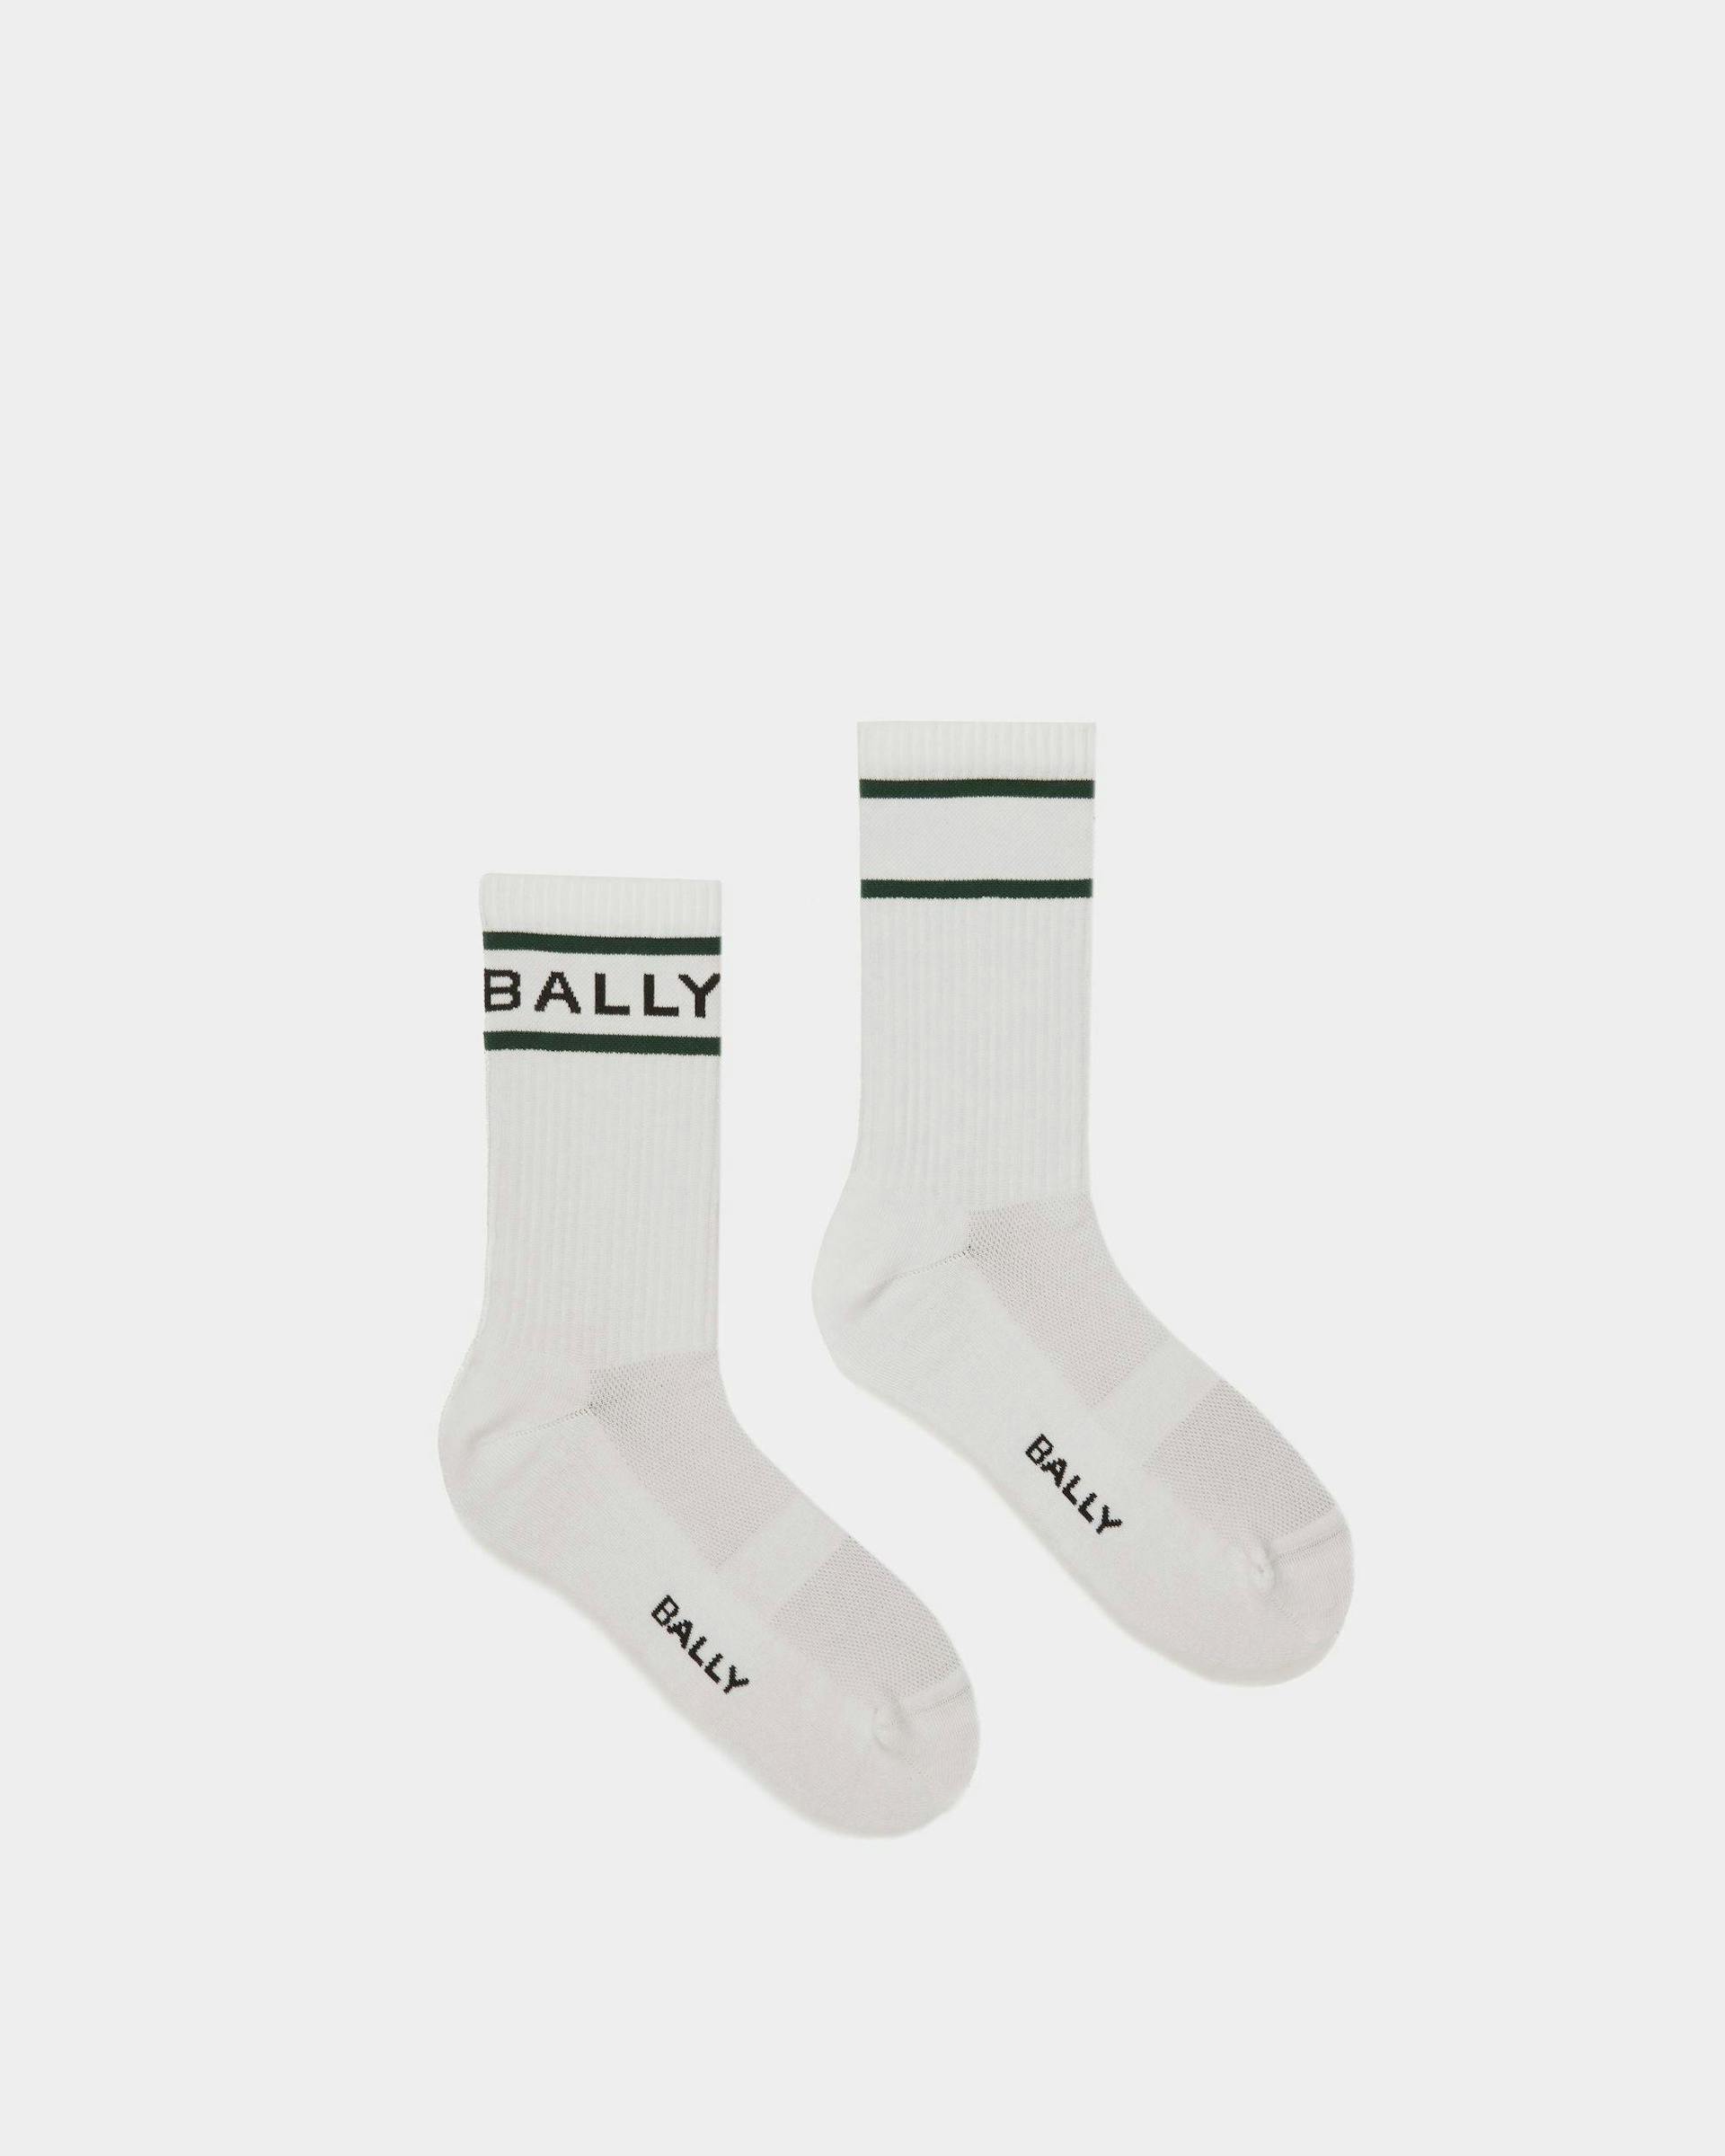 Bally Stripe Socken In Weiß und Grün - Herren - Bally - 01